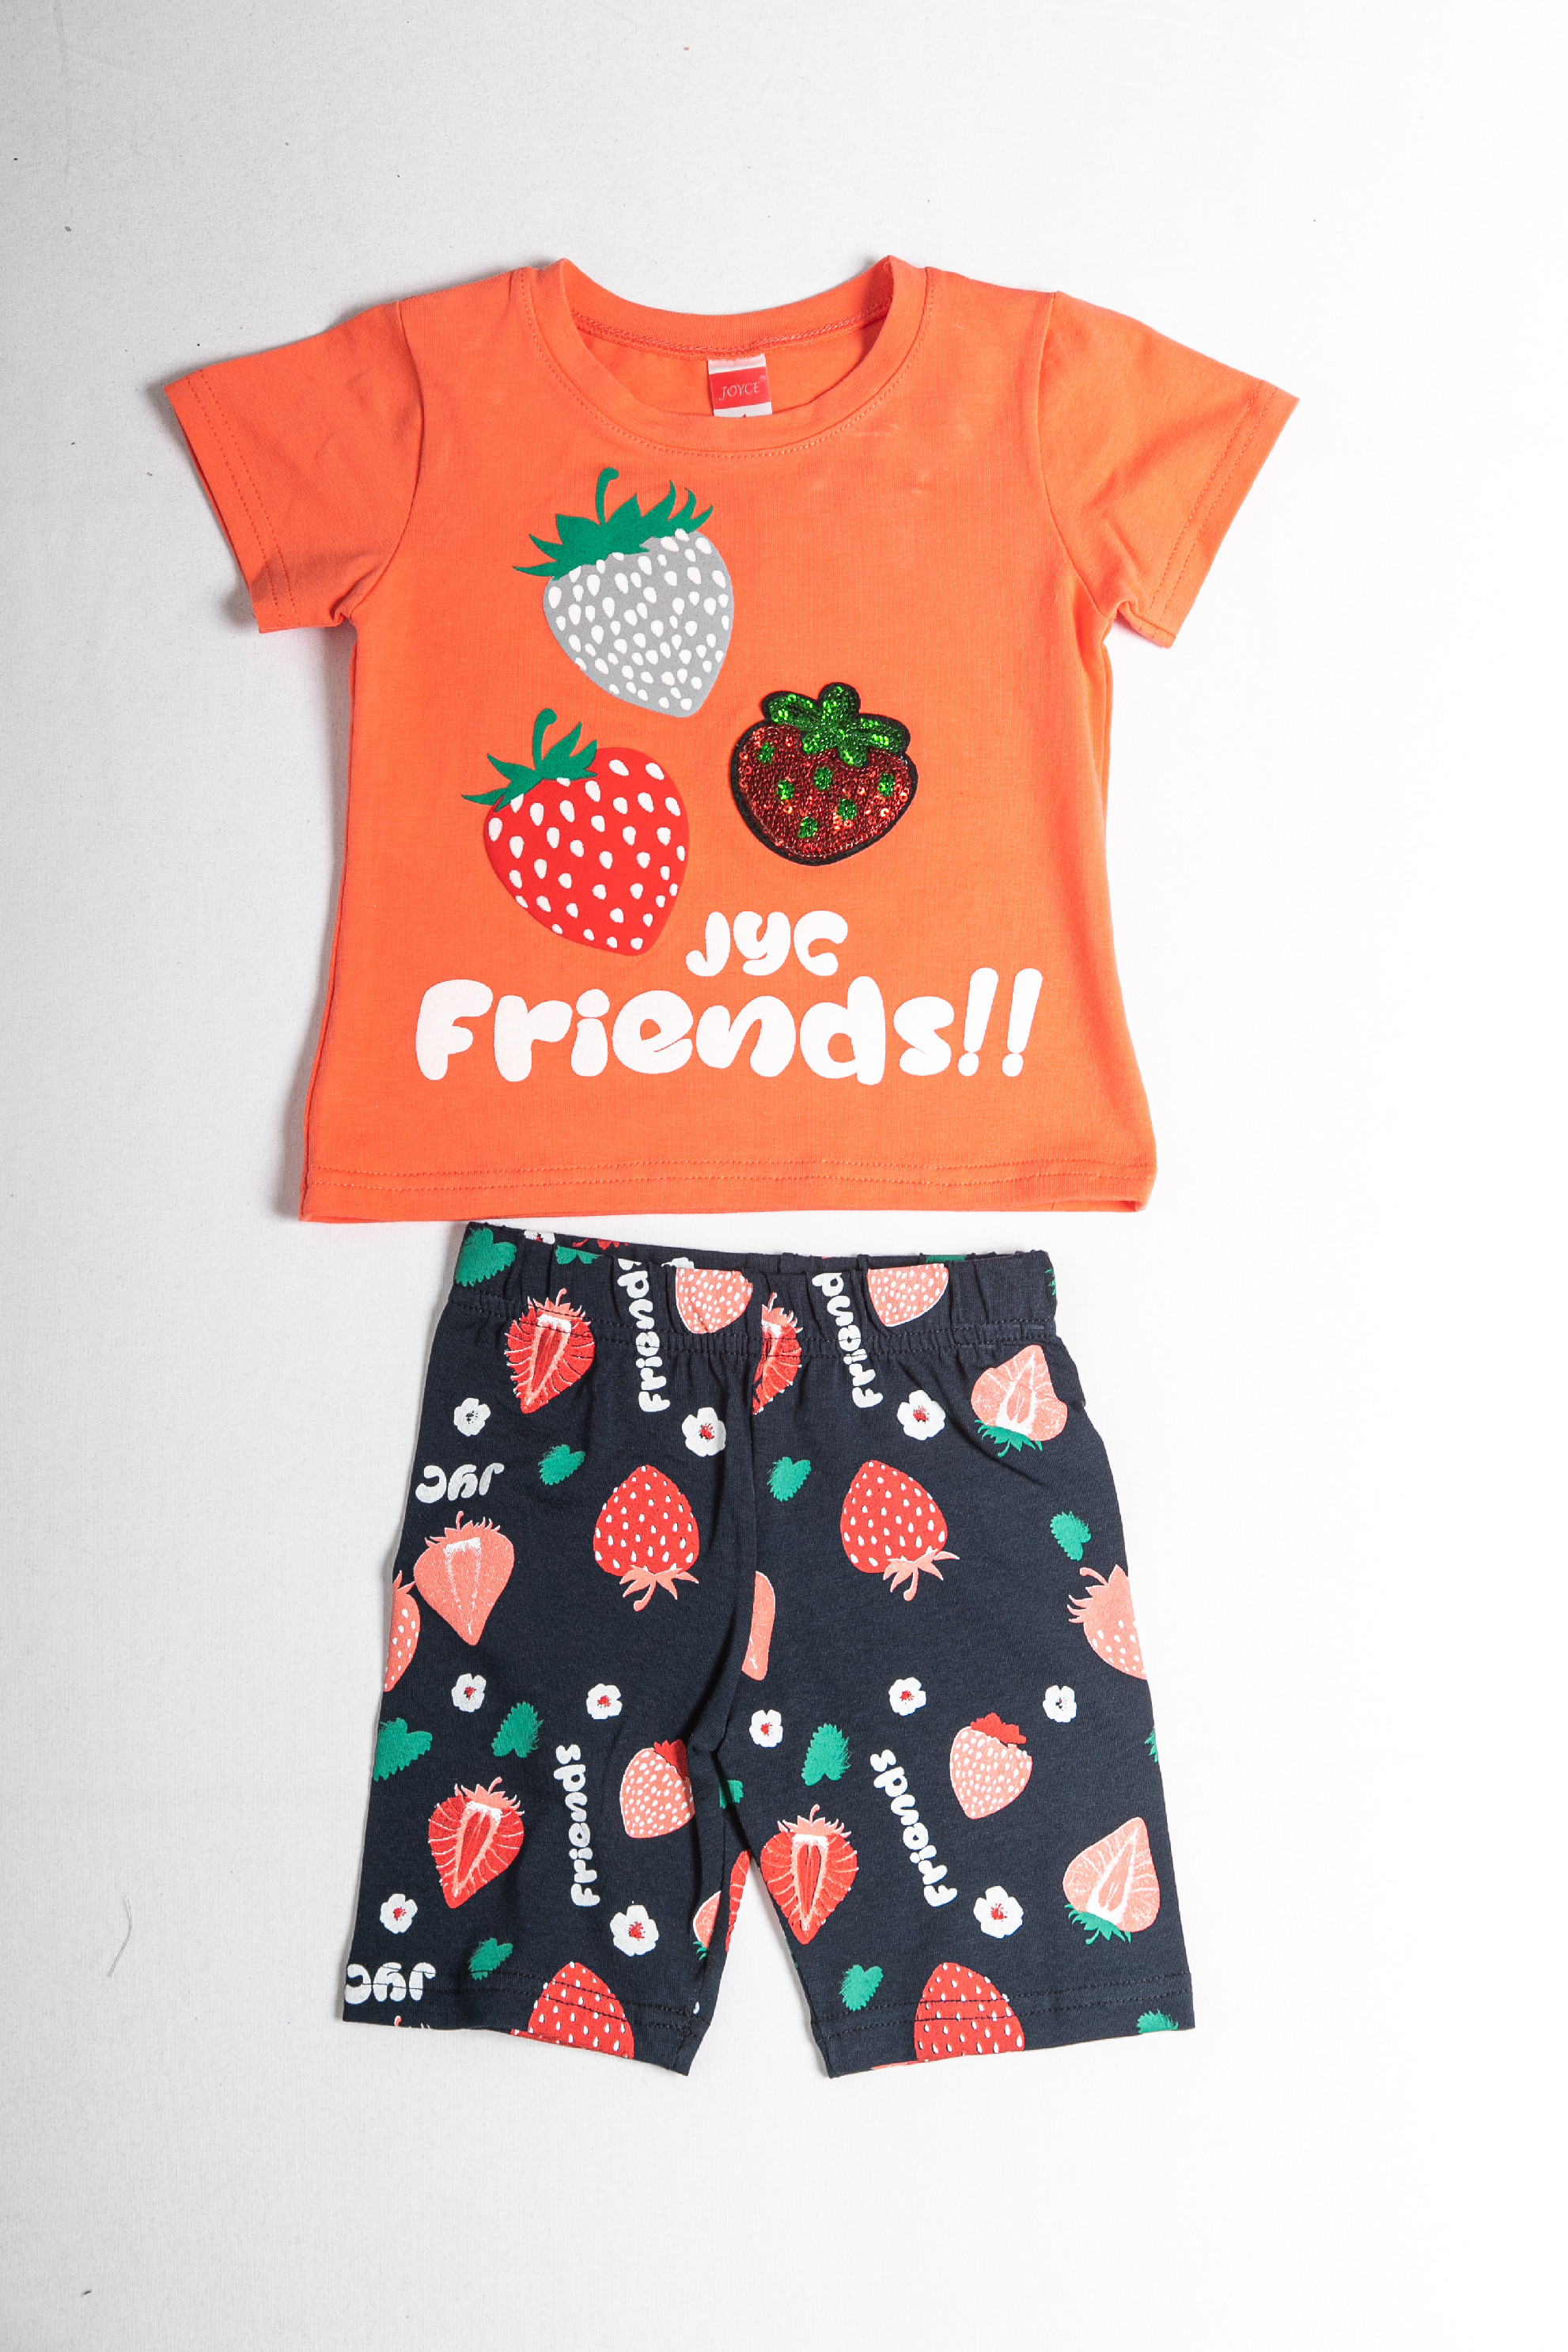 Dívčí letní souprava "FRIENDS"/Zelená, oranžová, bílá Barva: Oranžová, Velikost: vel. 1 (78/86 cm)